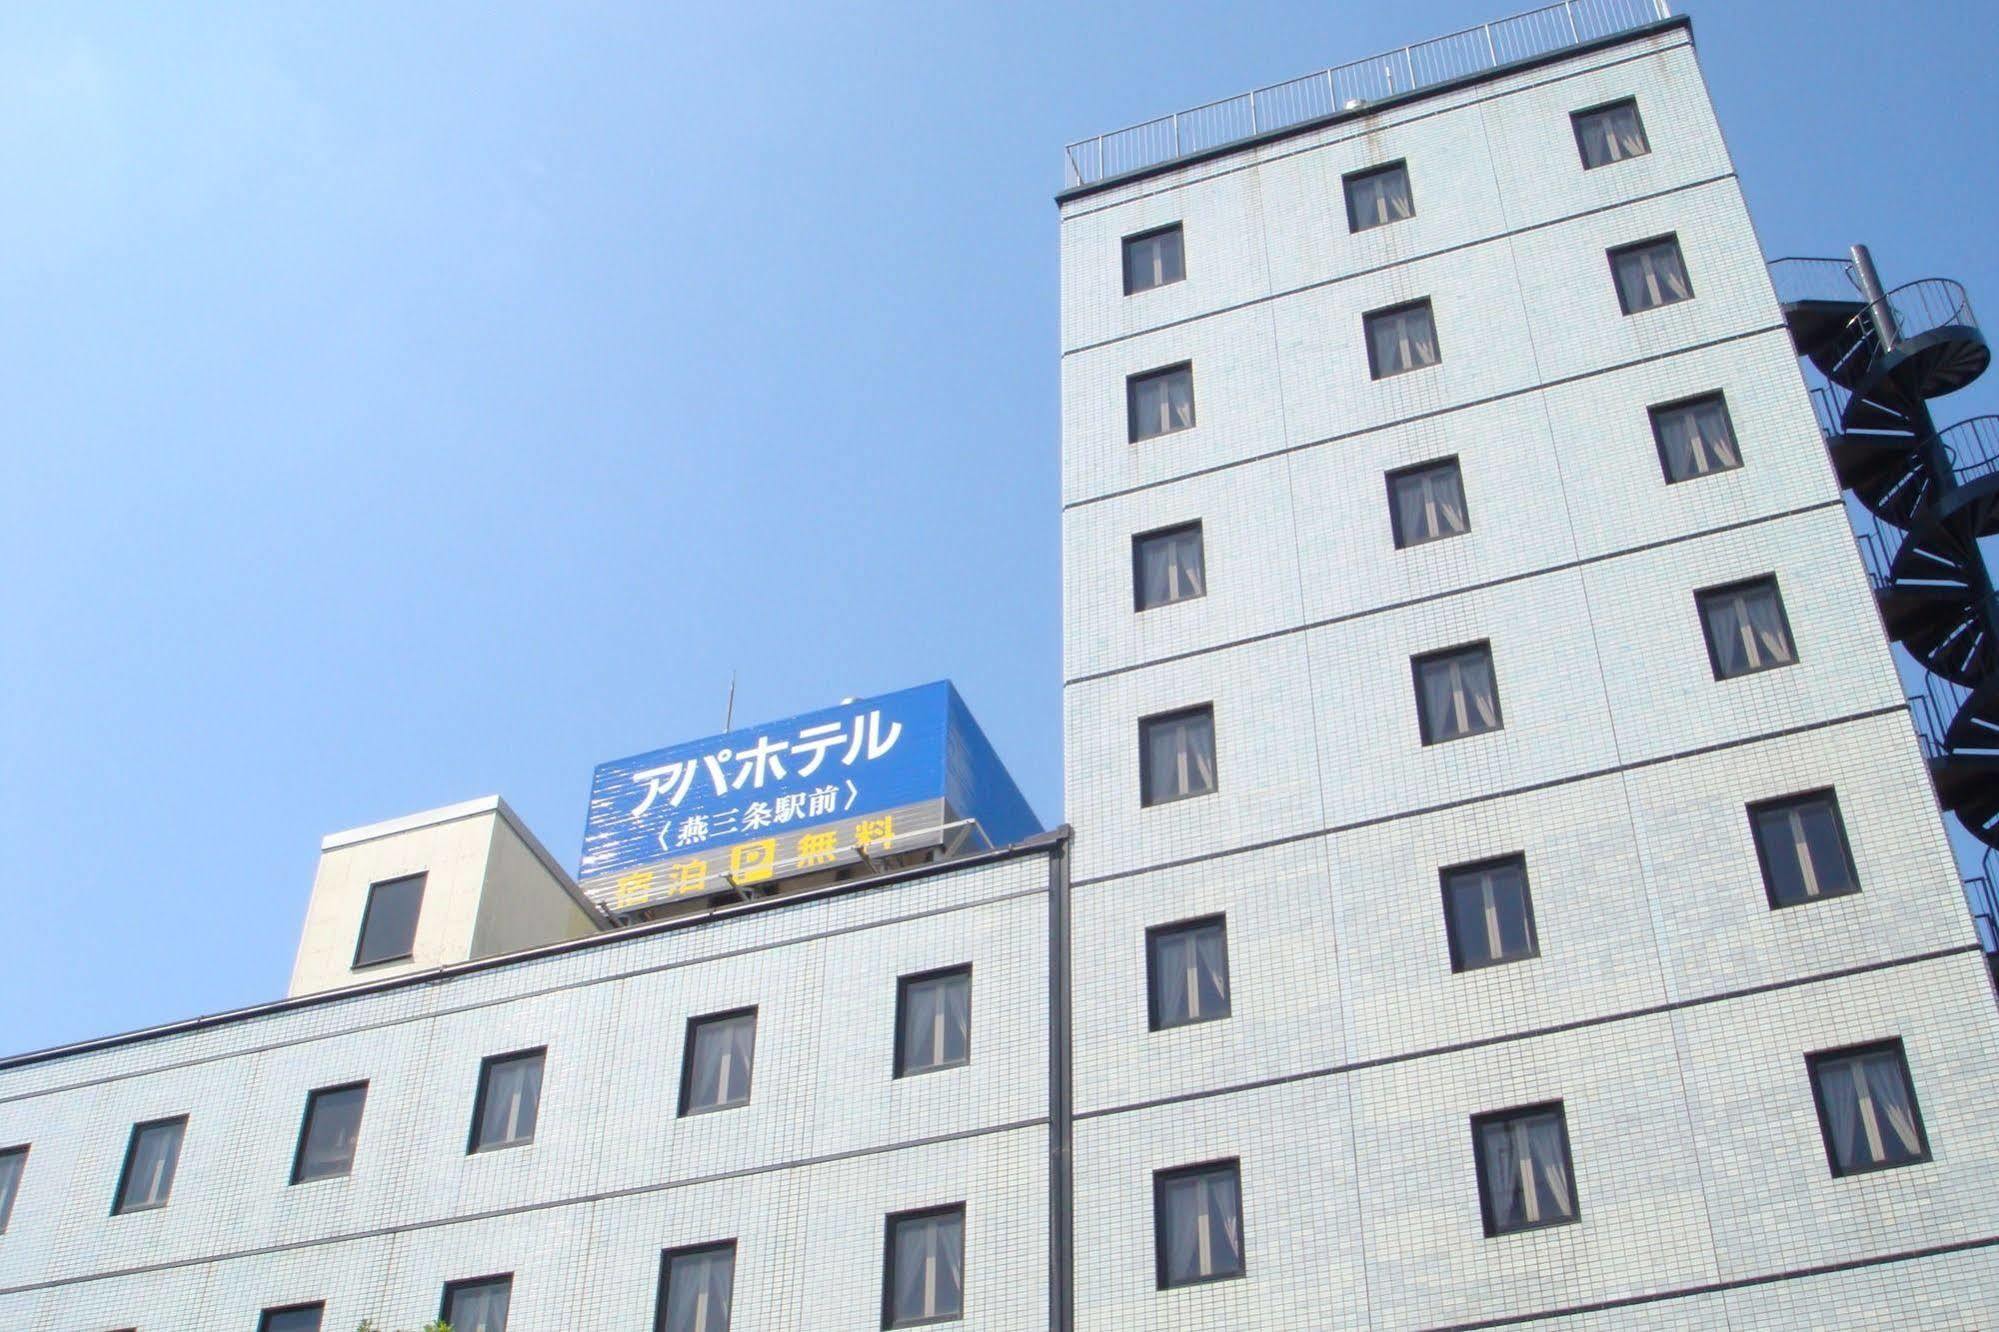 Apa Hotel Tsubame-Sanjo Ekimae Ngoại thất bức ảnh